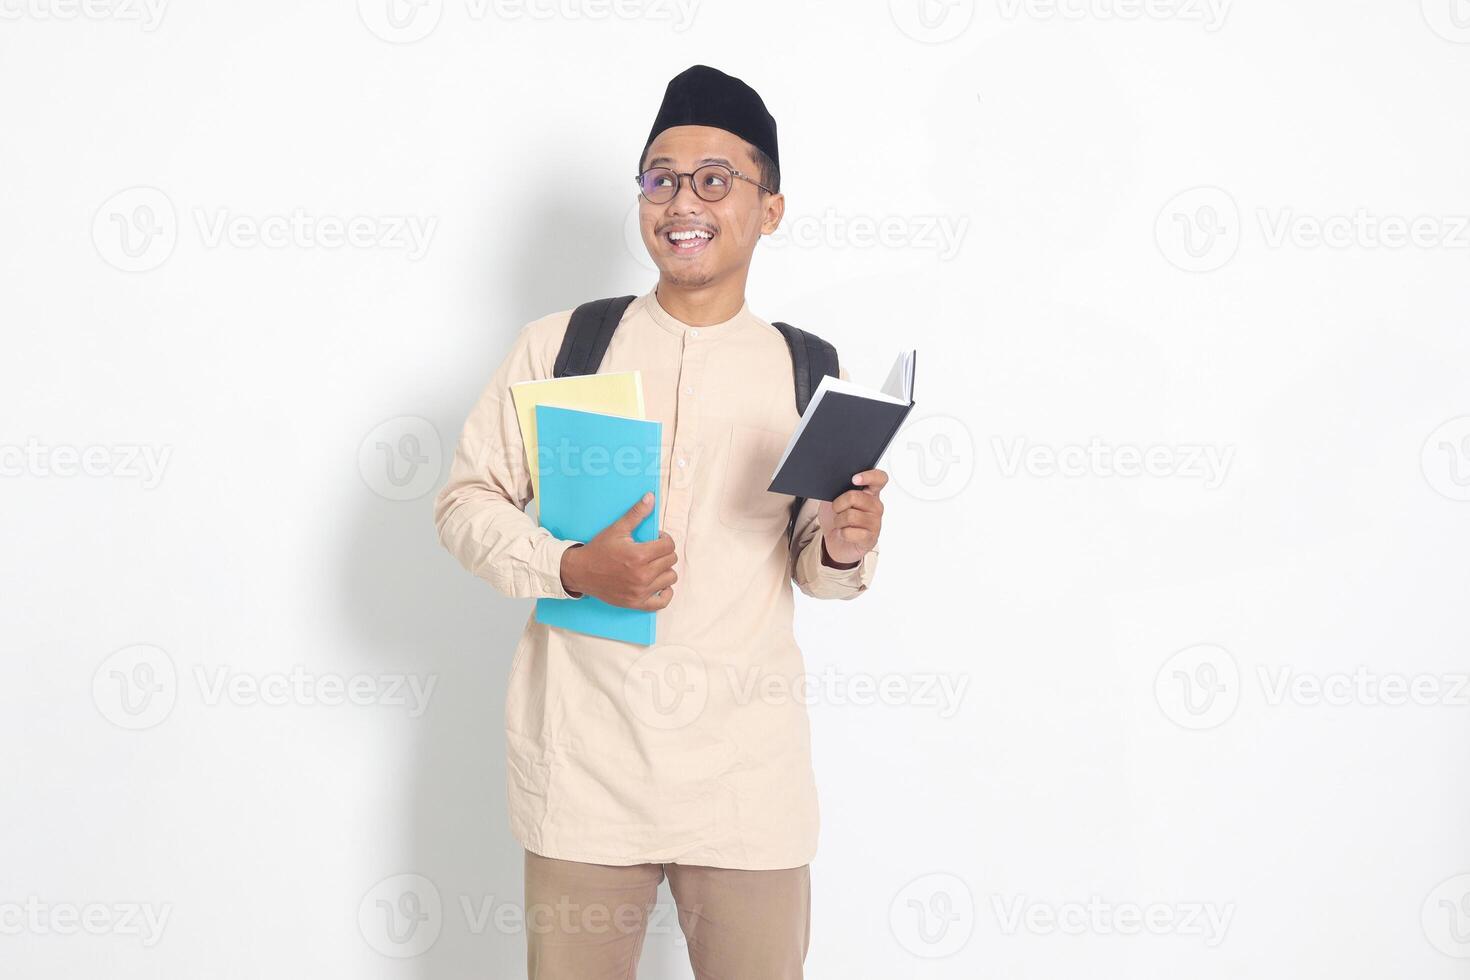 porträtt av upphetsad studerande asiatisk muslim man i koko skjorta med kalott bärande skola böcker, medan läsning hans anteckningsbok. isolerat bild på vit bakgrund foto